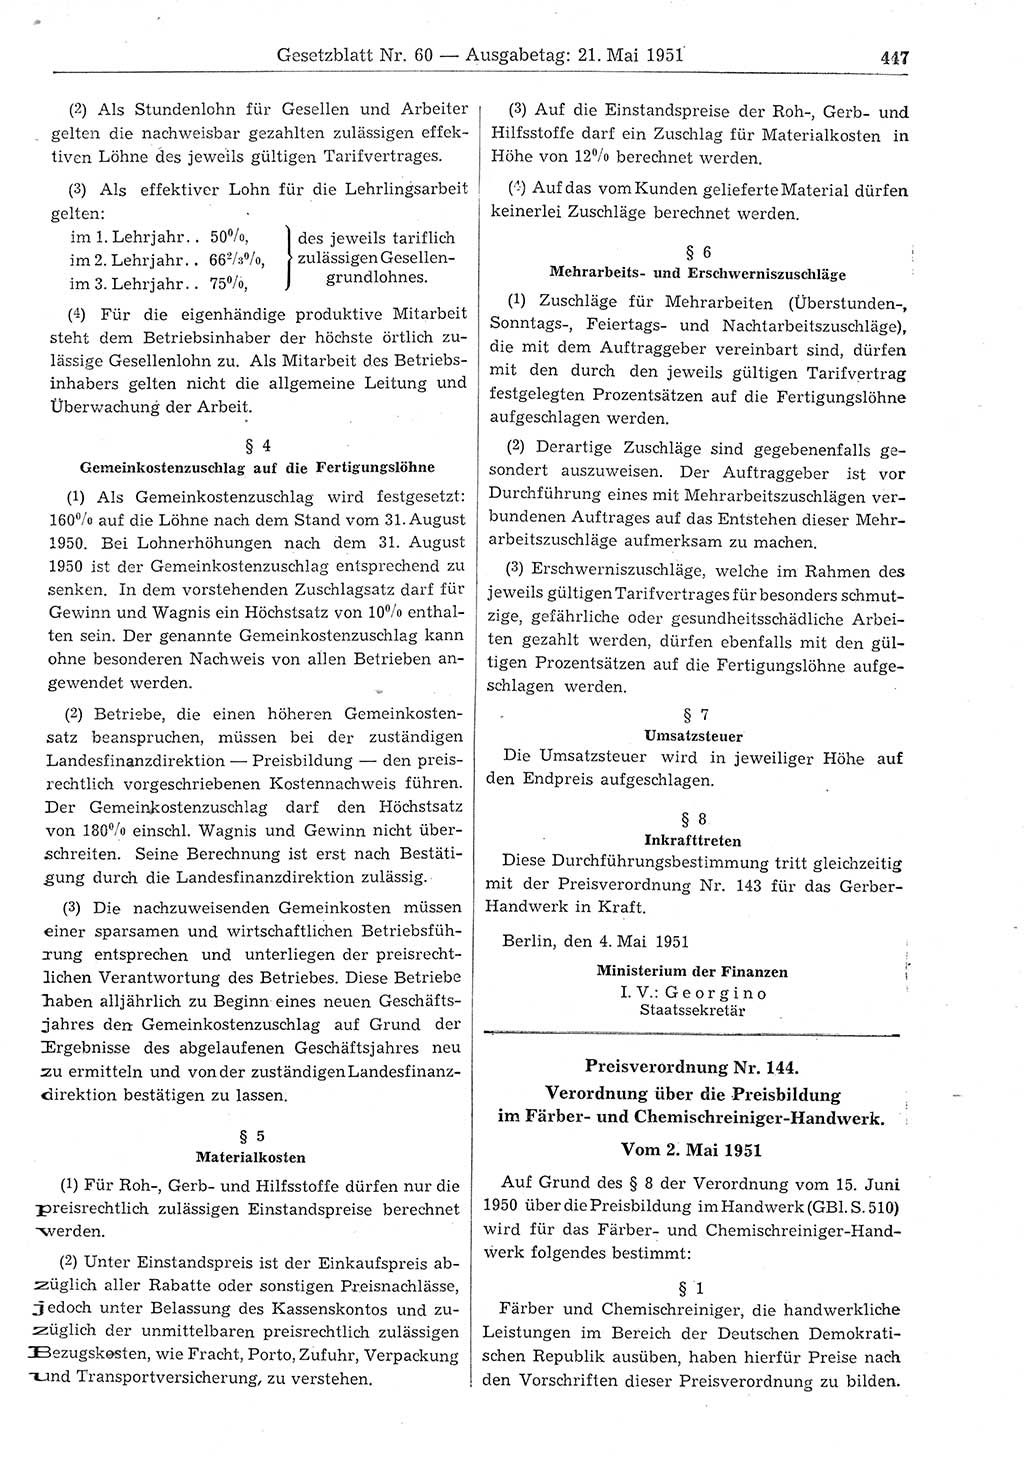 Gesetzblatt (GBl.) der Deutschen Demokratischen Republik (DDR) 1951, Seite 447 (GBl. DDR 1951, S. 447)